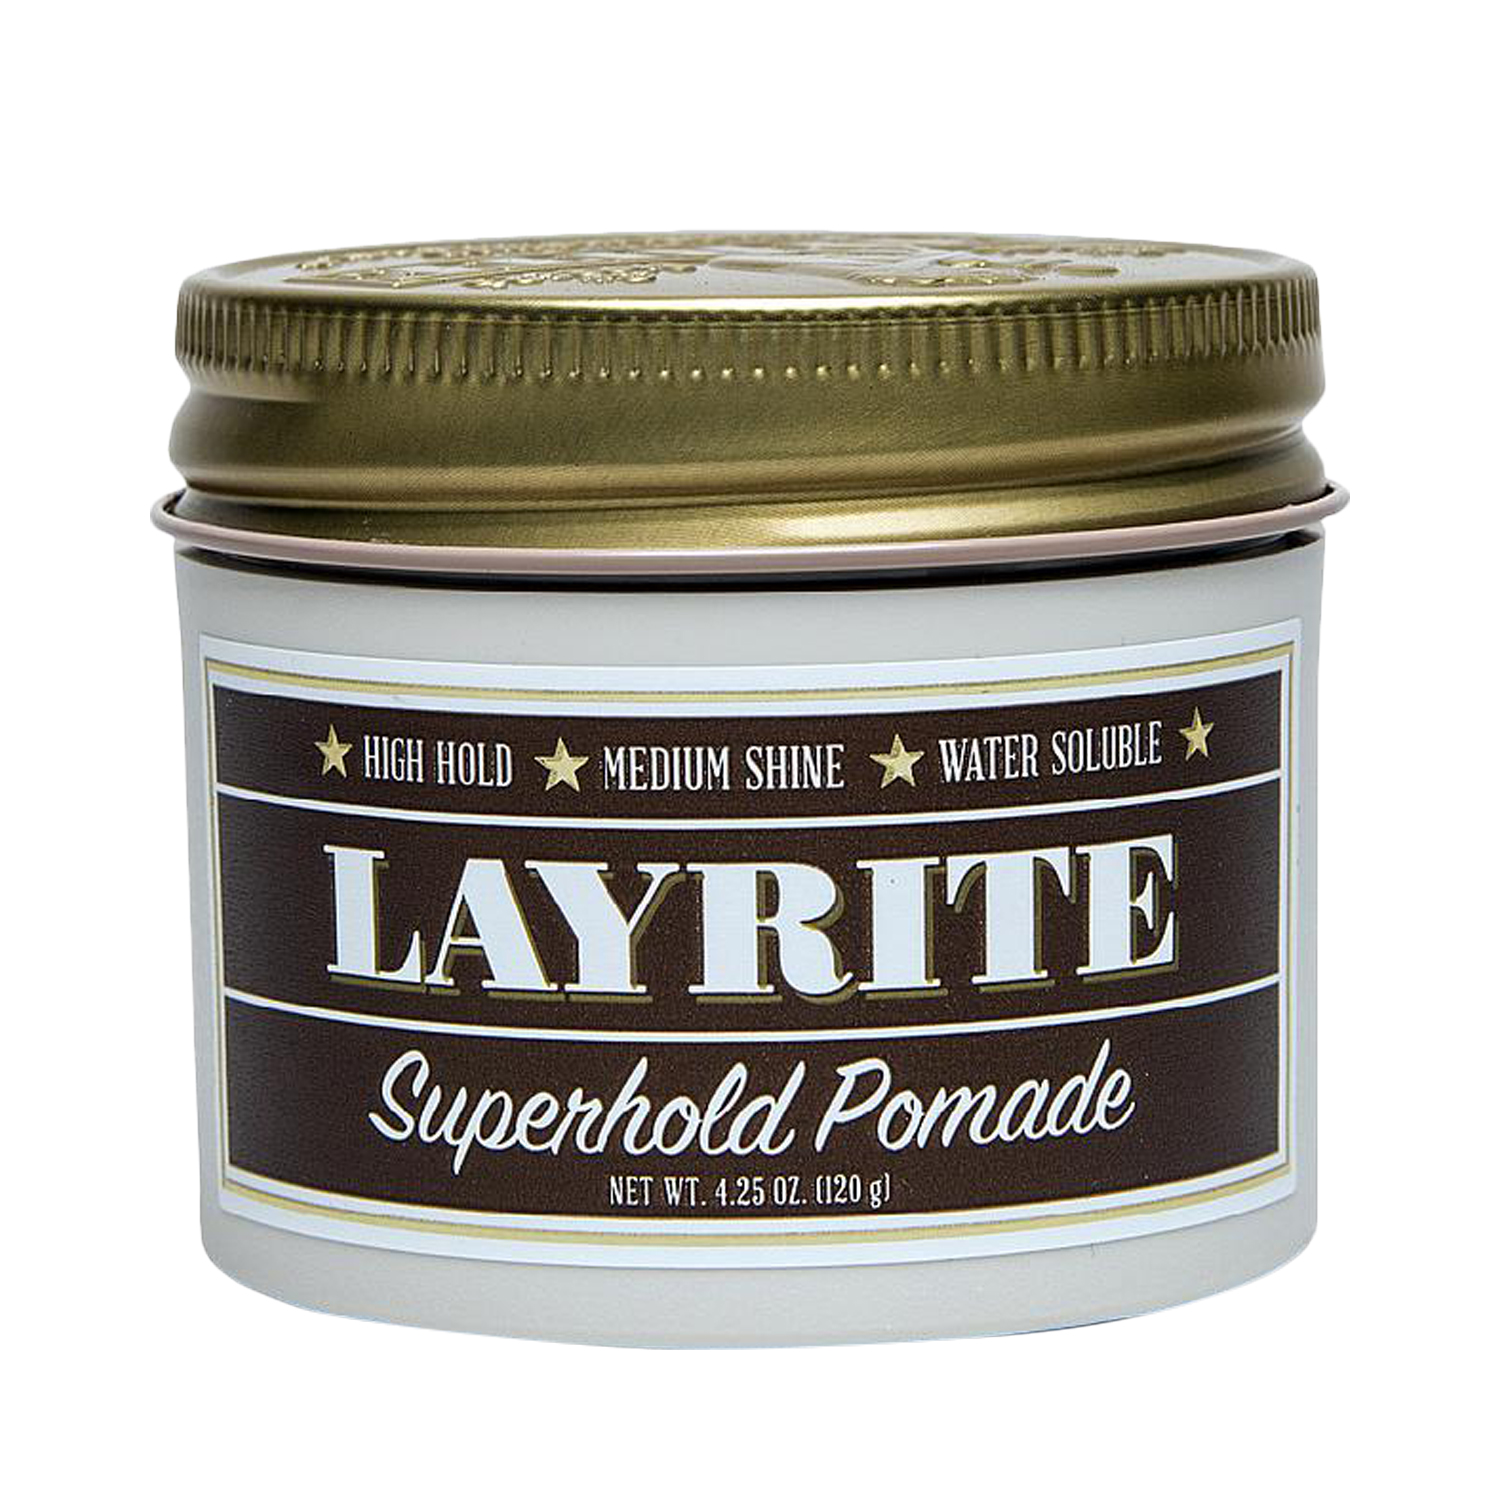 Layrite - Superhold Pomade - fester Halt, mittlerer Glanz, wasserlöslich